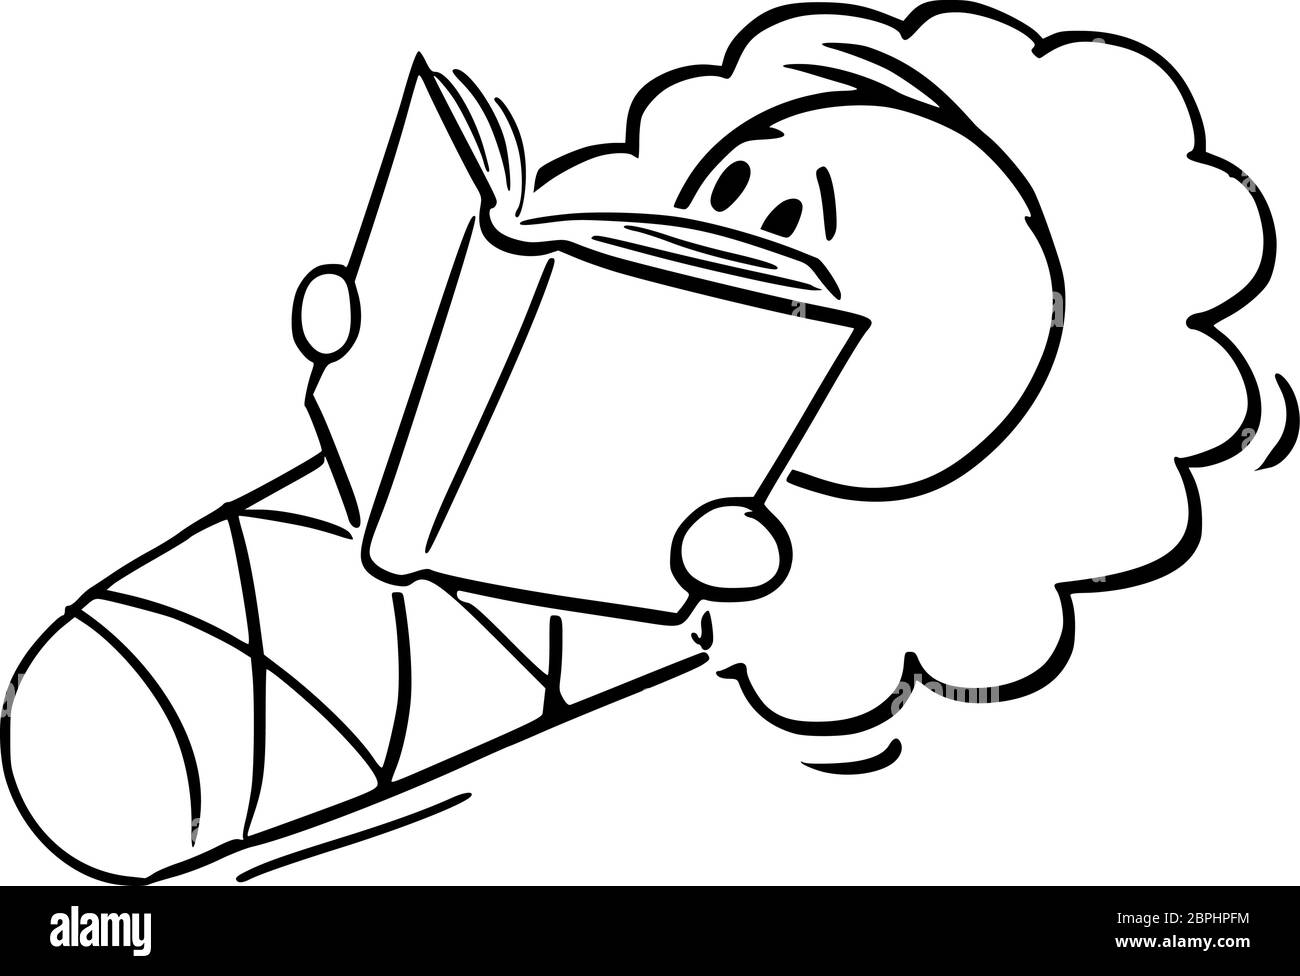 Disegno vettoriale di figura del cartoon illustrazione concettuale del bambino avvolto in un involucro o in una coperta di swaddle che tiene, leggendo o studiando il libro. Illustrazione Vettoriale